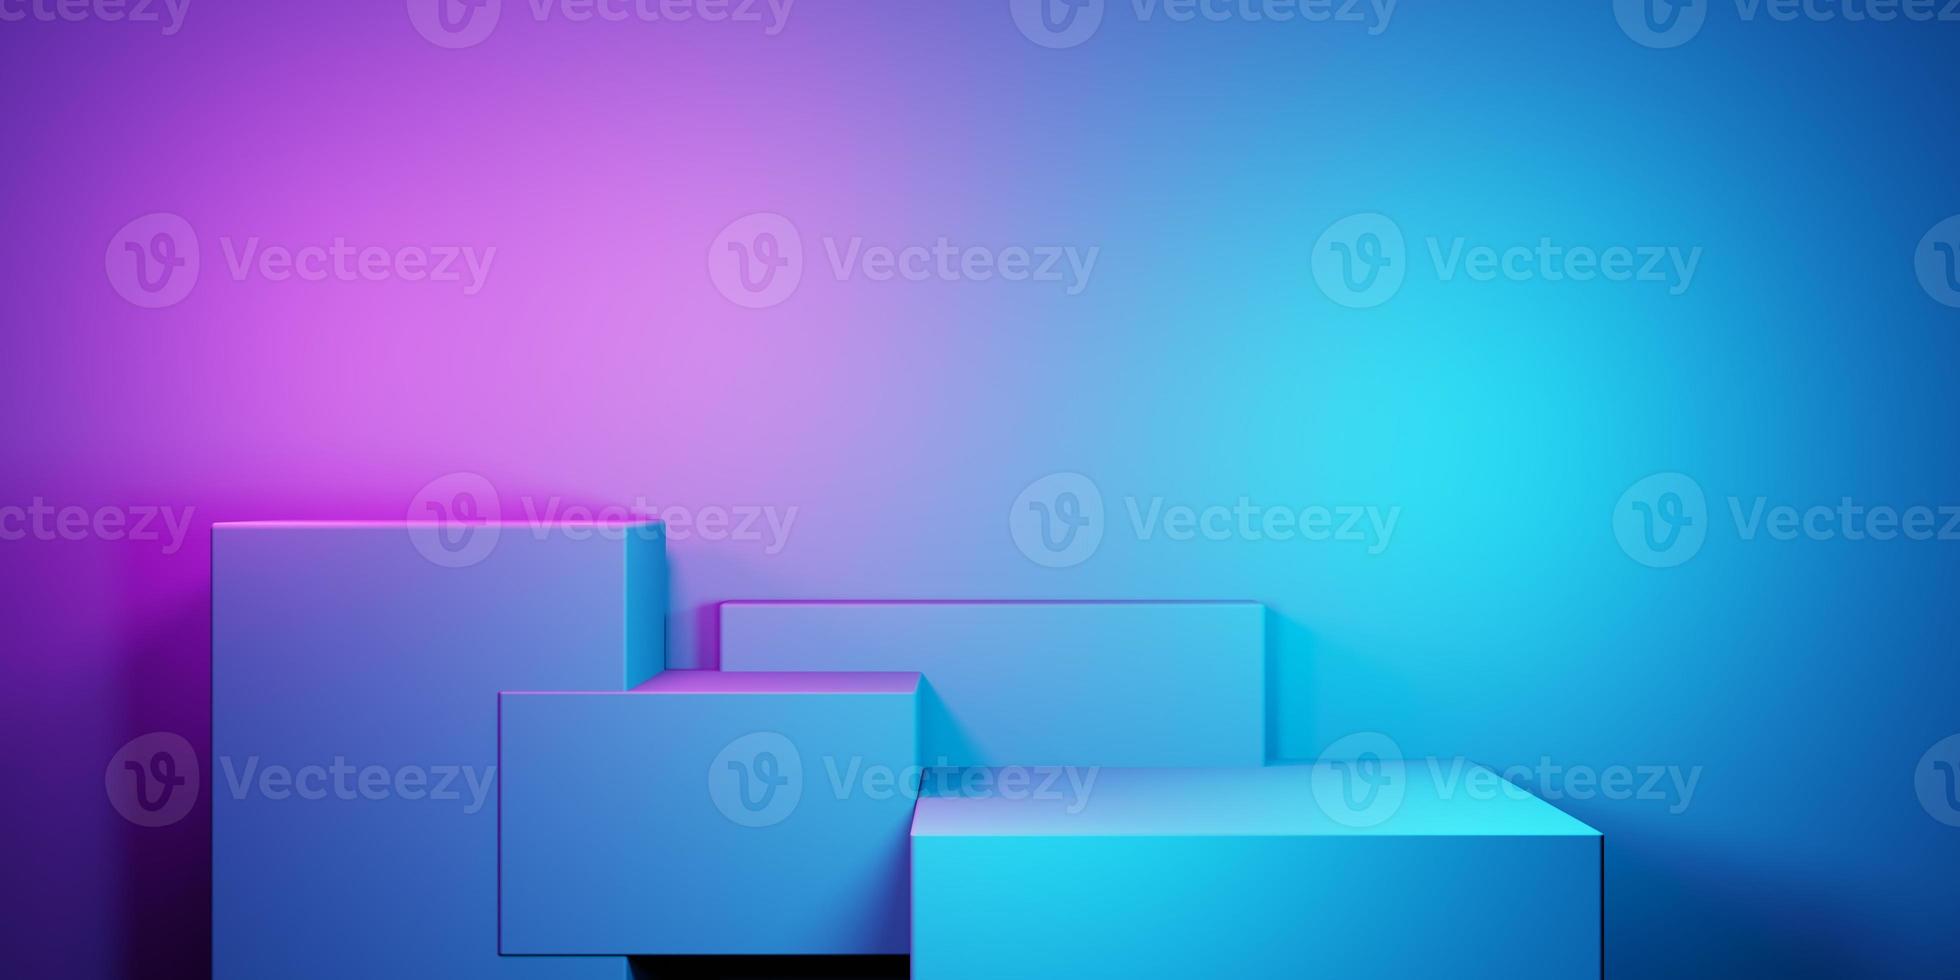 3D-Rendering von lila und blau abstrakten geometrischen Hintergrund. szene für werbung, technik, schaufenster, banner, kosmetik, mode, business, sport, metaverse. Science-Fiction-Illustration. Warenpräsentation foto